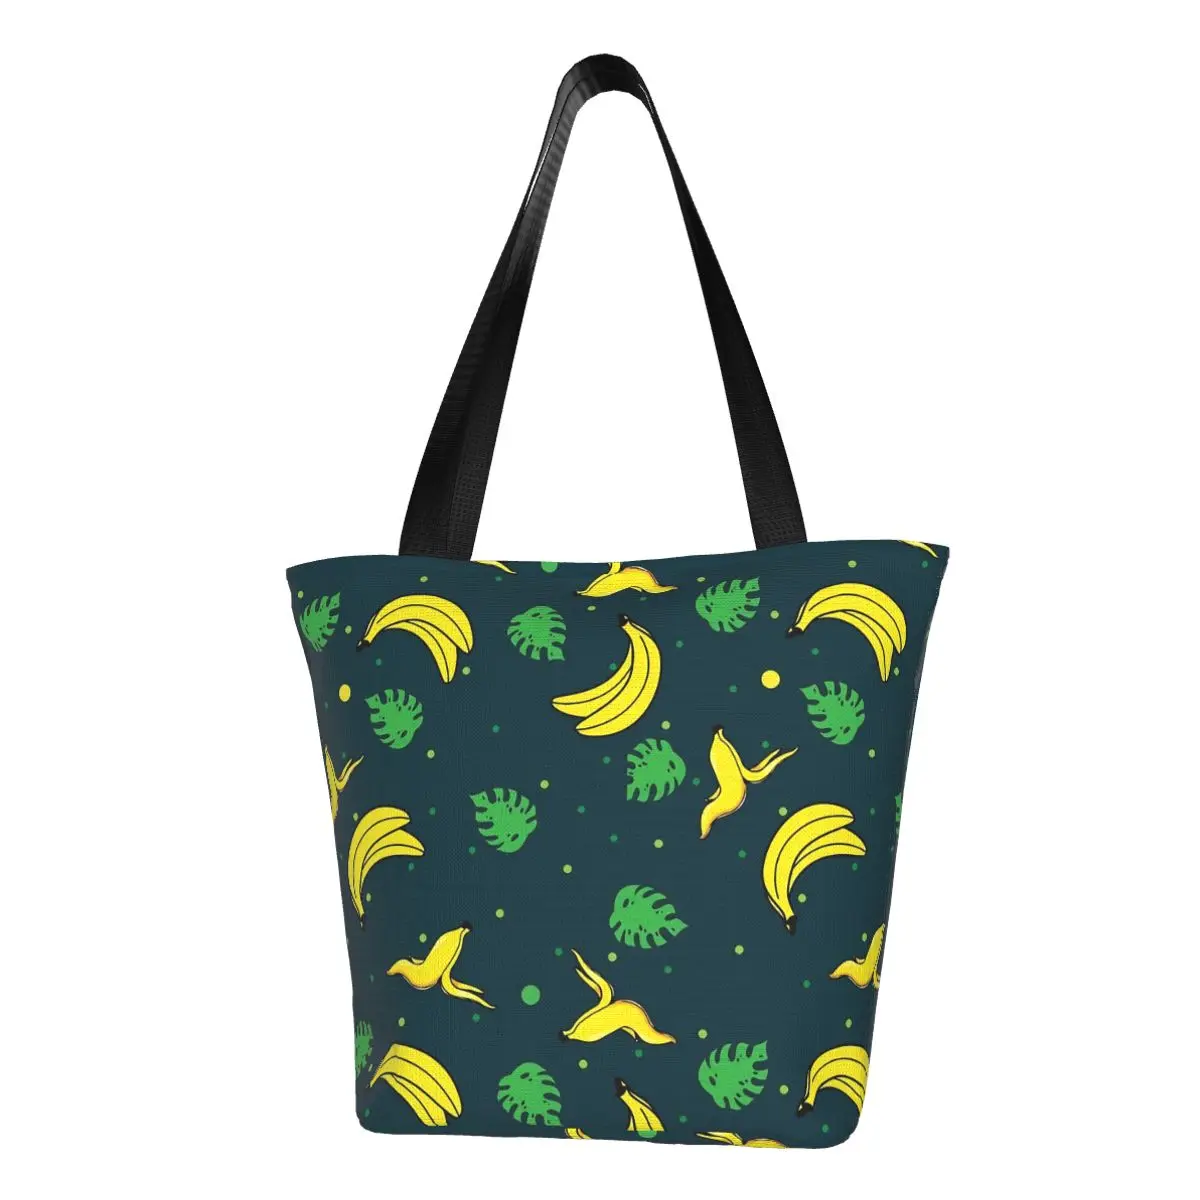 

Сумка-шоппер с принтом бананов, Женская тканевая дорожная сумочка-тоут на ремне с зелеными листьями, крутые дизайнерские чемоданчики